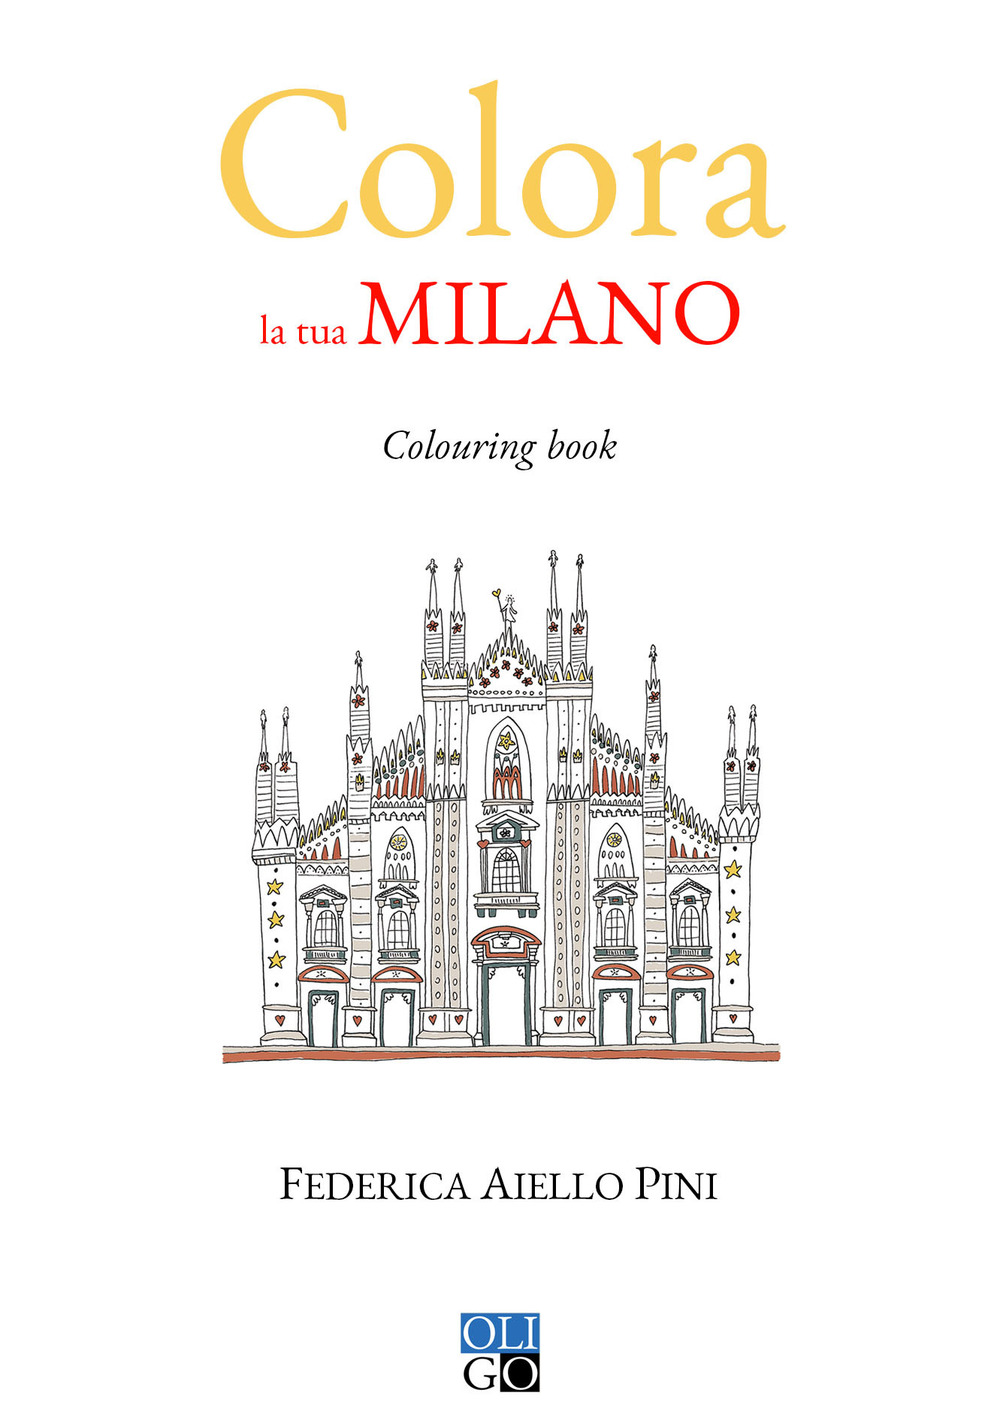 Colora la tua Milano. Colouring book. Ediz. illustrata